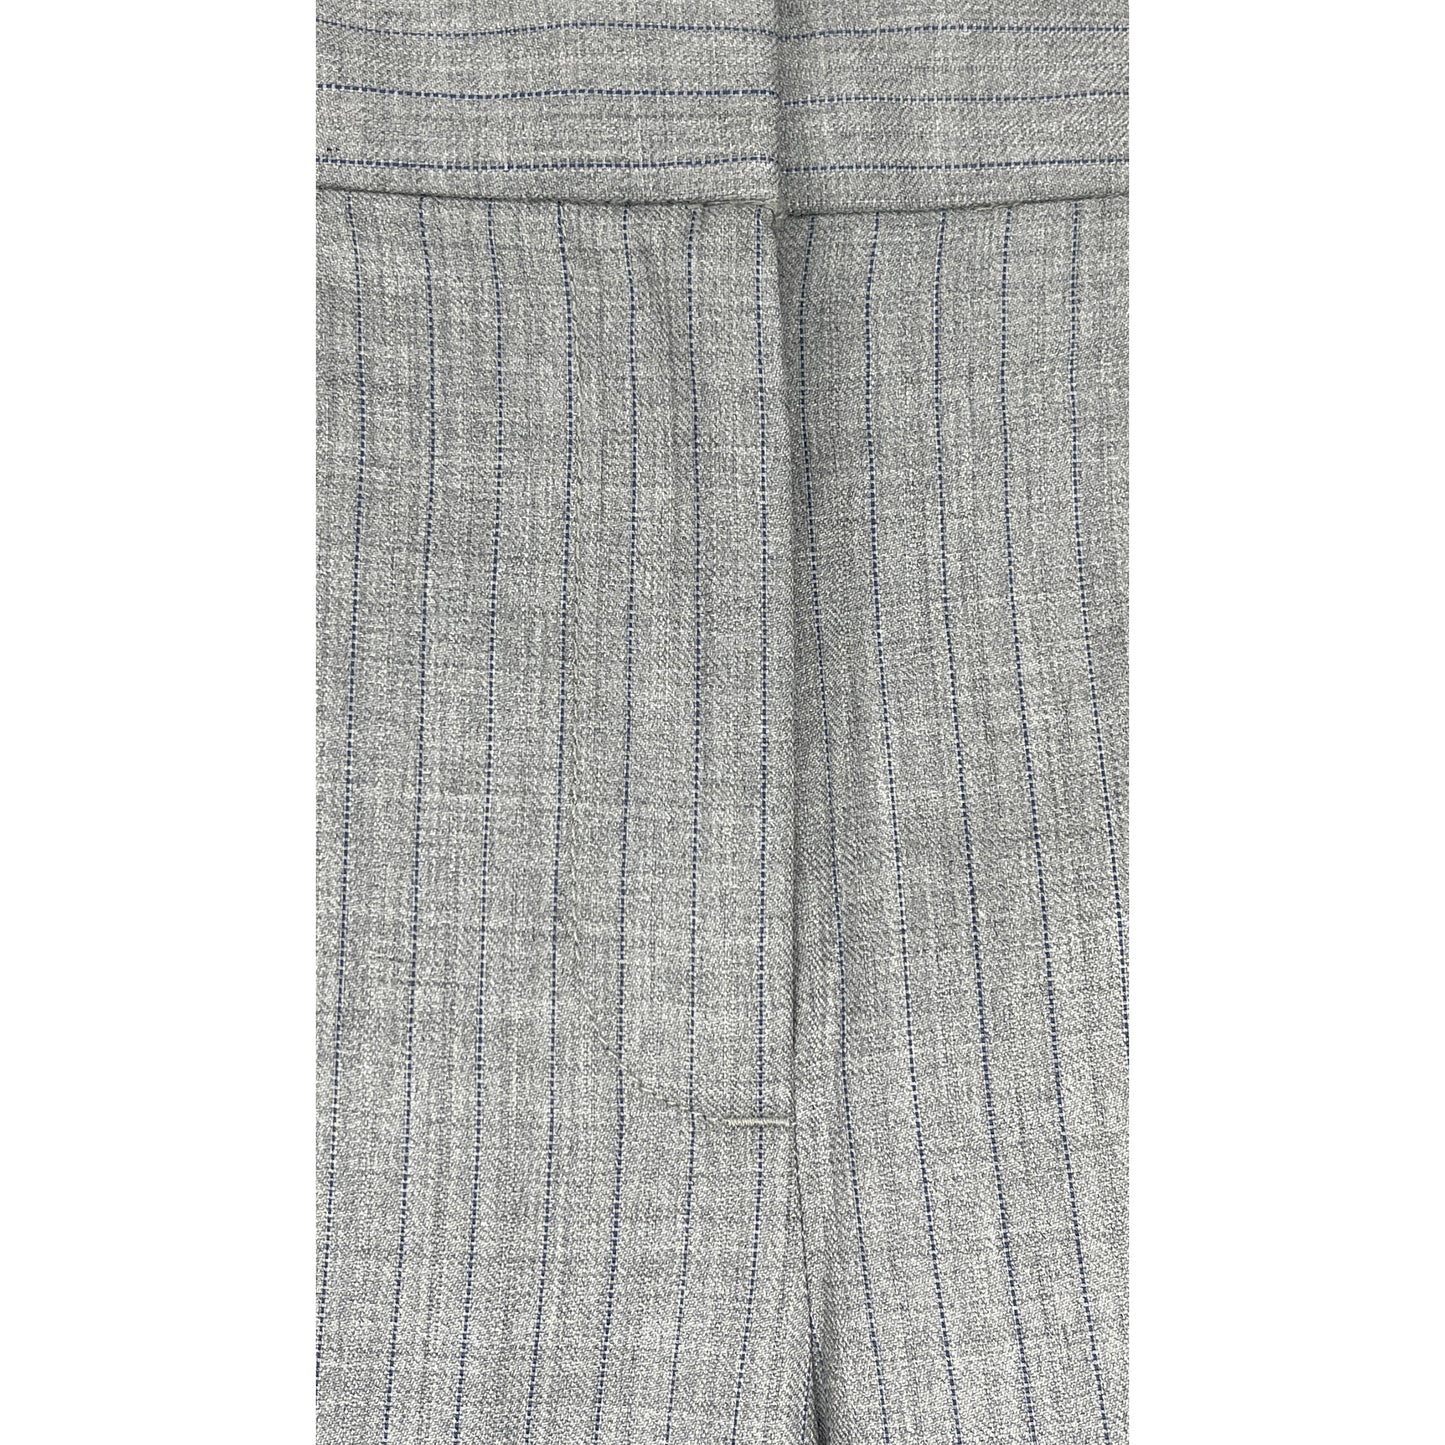 J Crew Dress Pants Pin Stripe Gray, Blue Size 12 SKU 000416